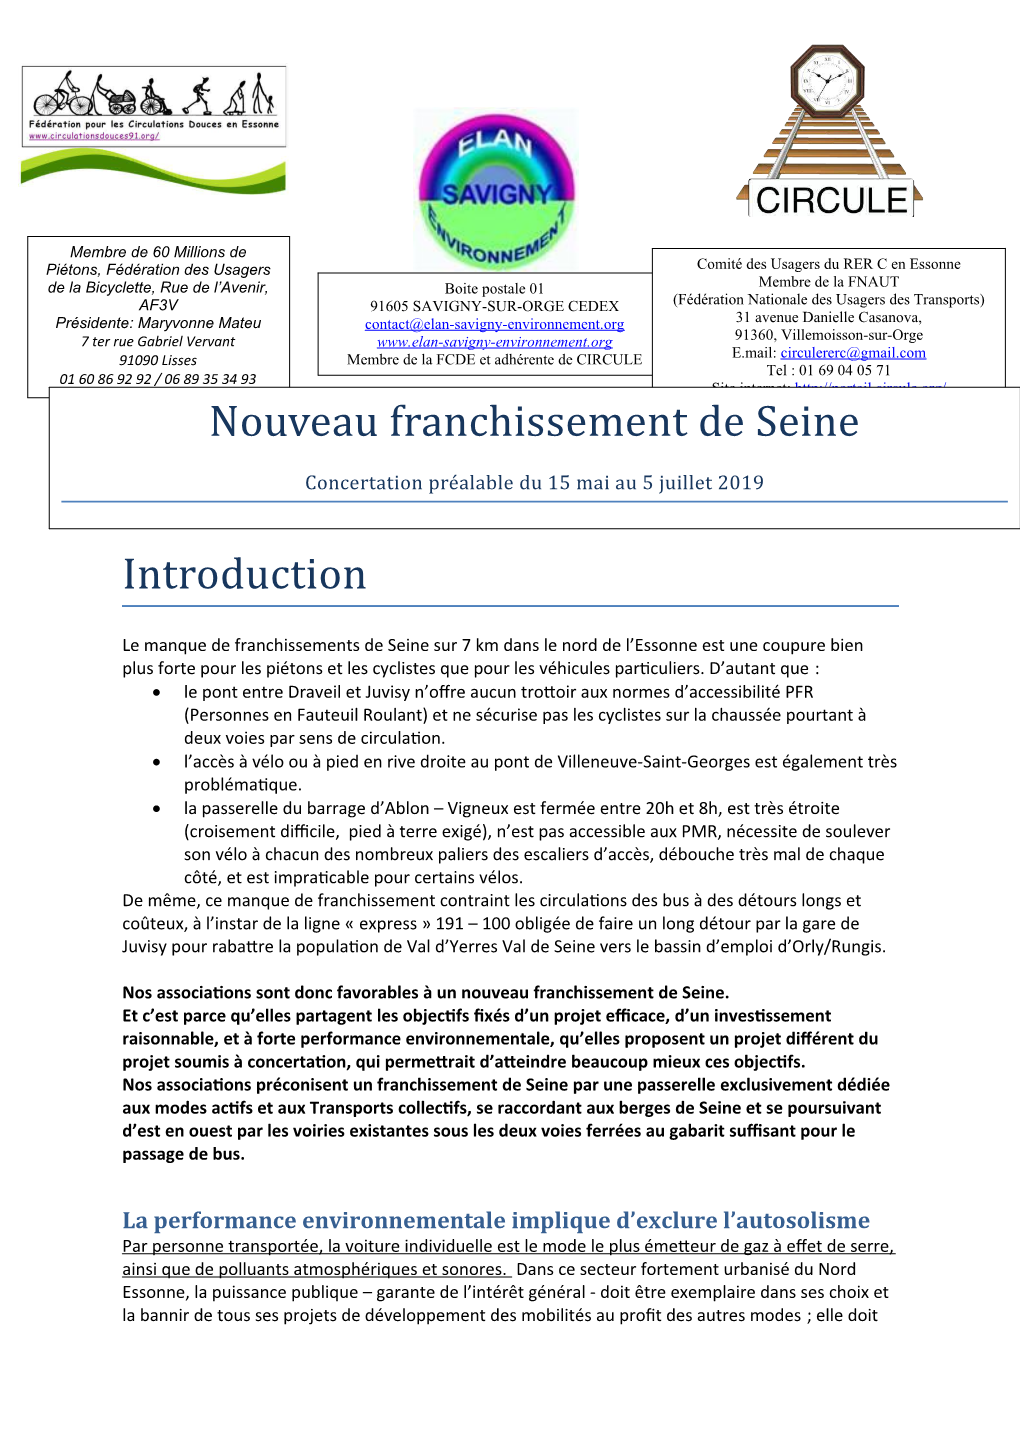 Introduction Nouveau Franchissement De Seine